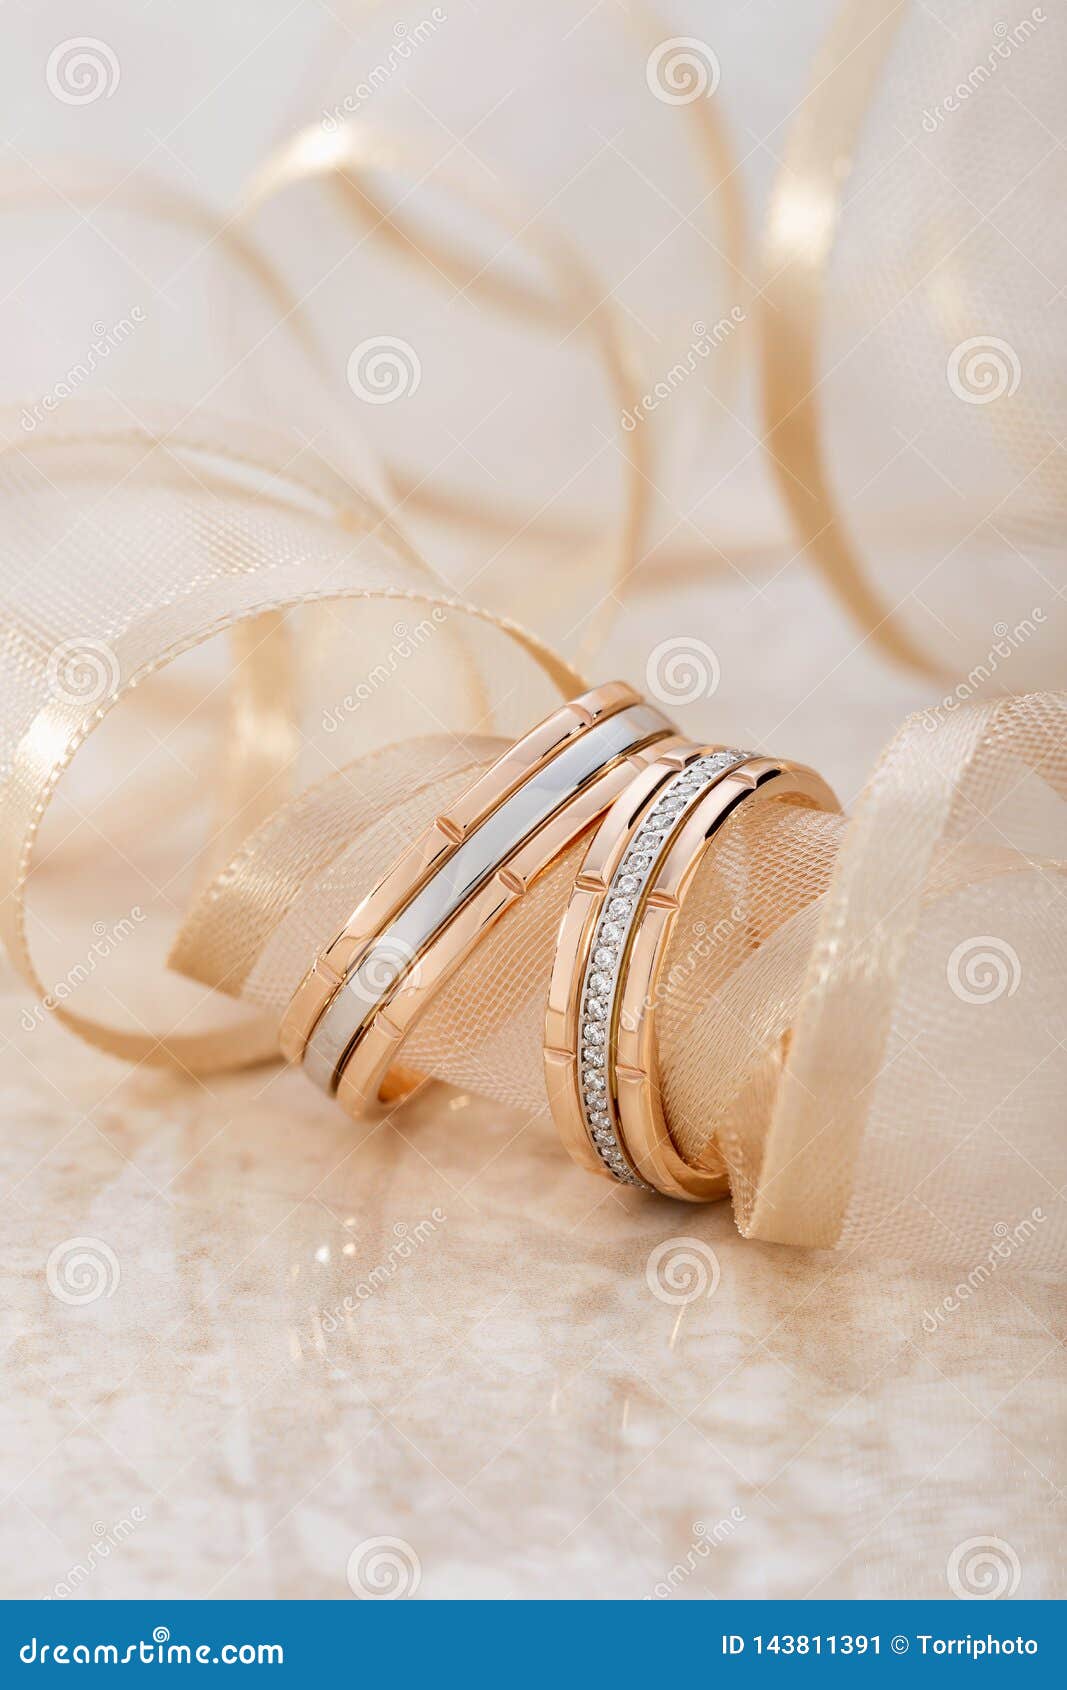 Một chiếc nhẫn cưới vàng hồng sẽ làm tôn lên vẻ đẹp tinh tế và nữ tính của cô dâu. Hãy tận hưởng niềm hạnh phúc của ngày trọng đại và chiêm ngưỡng những mẫu nhẫn cưới vàng hồng sang trọng và đẳng cấp này.